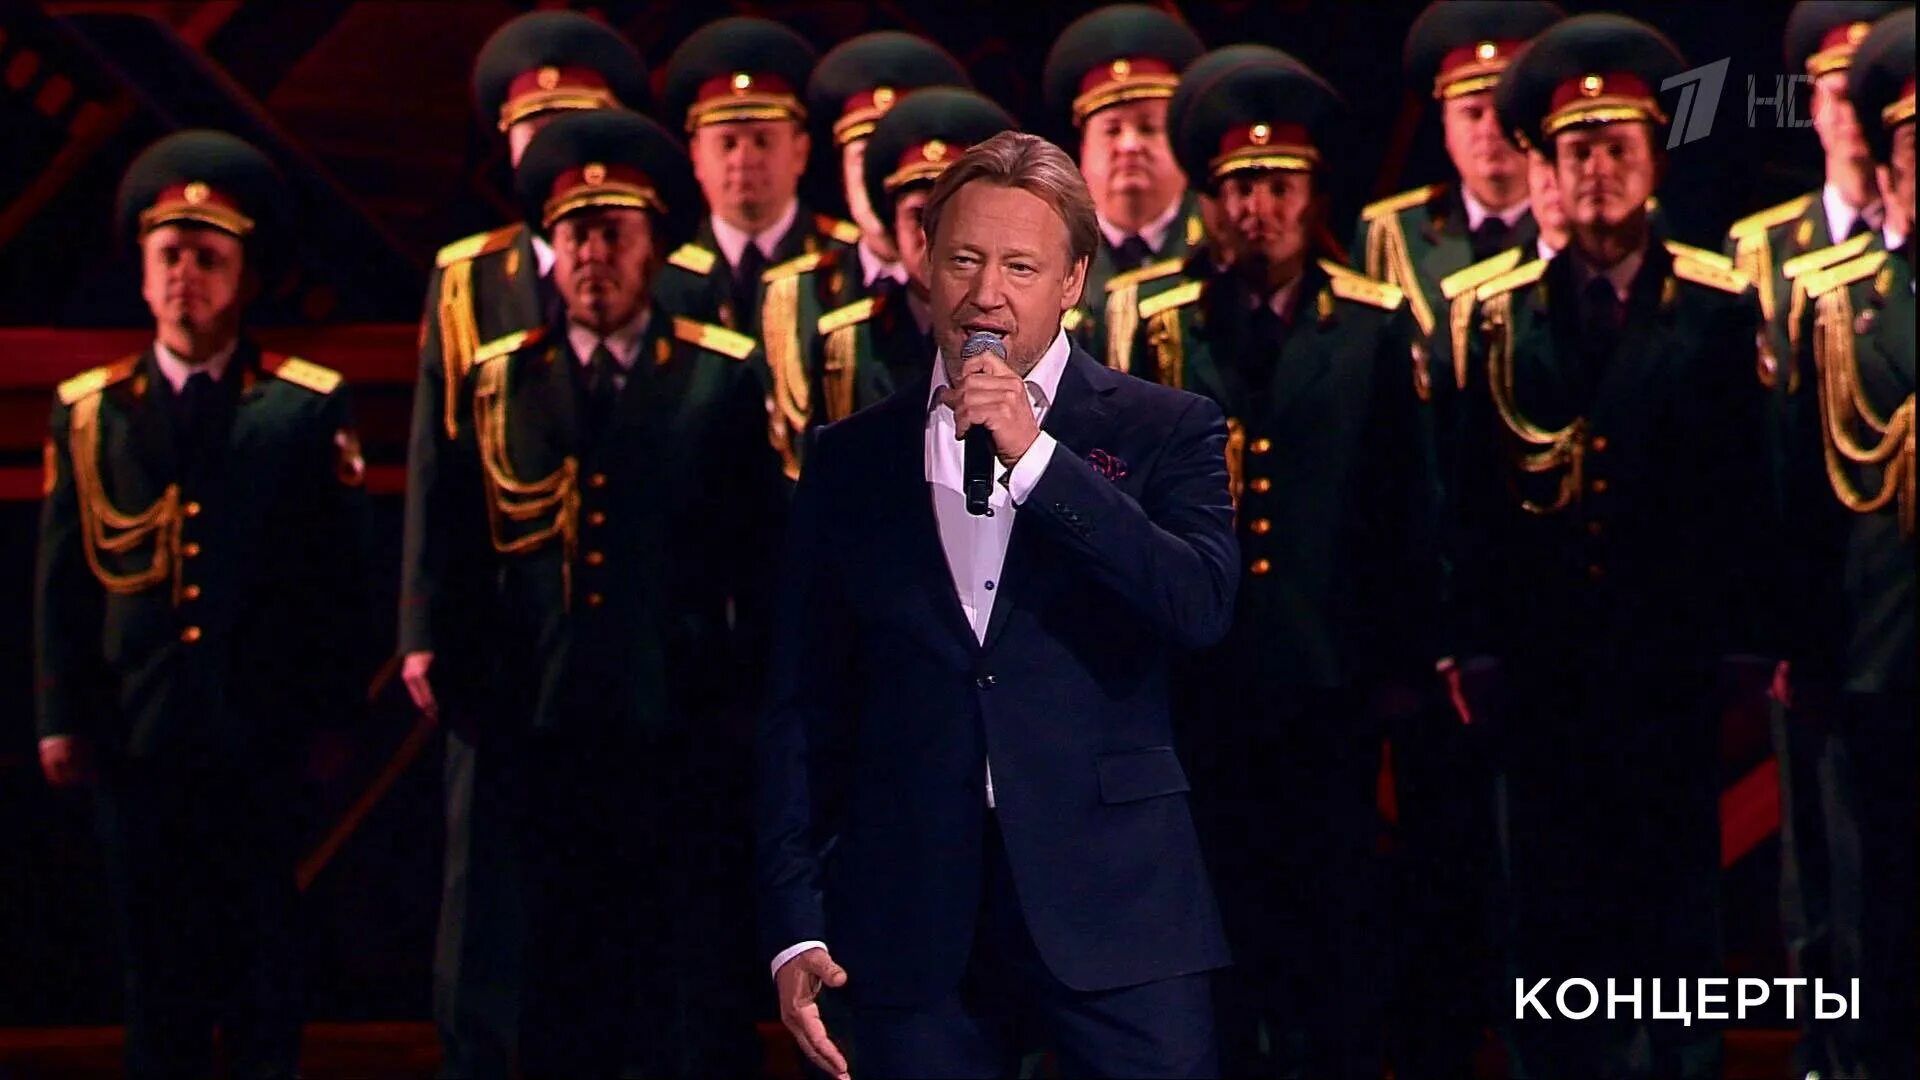 Юбилейный концерт 23 февраля. Концерт посвященный 23 февраля. Офицеры концерт в Кремле.